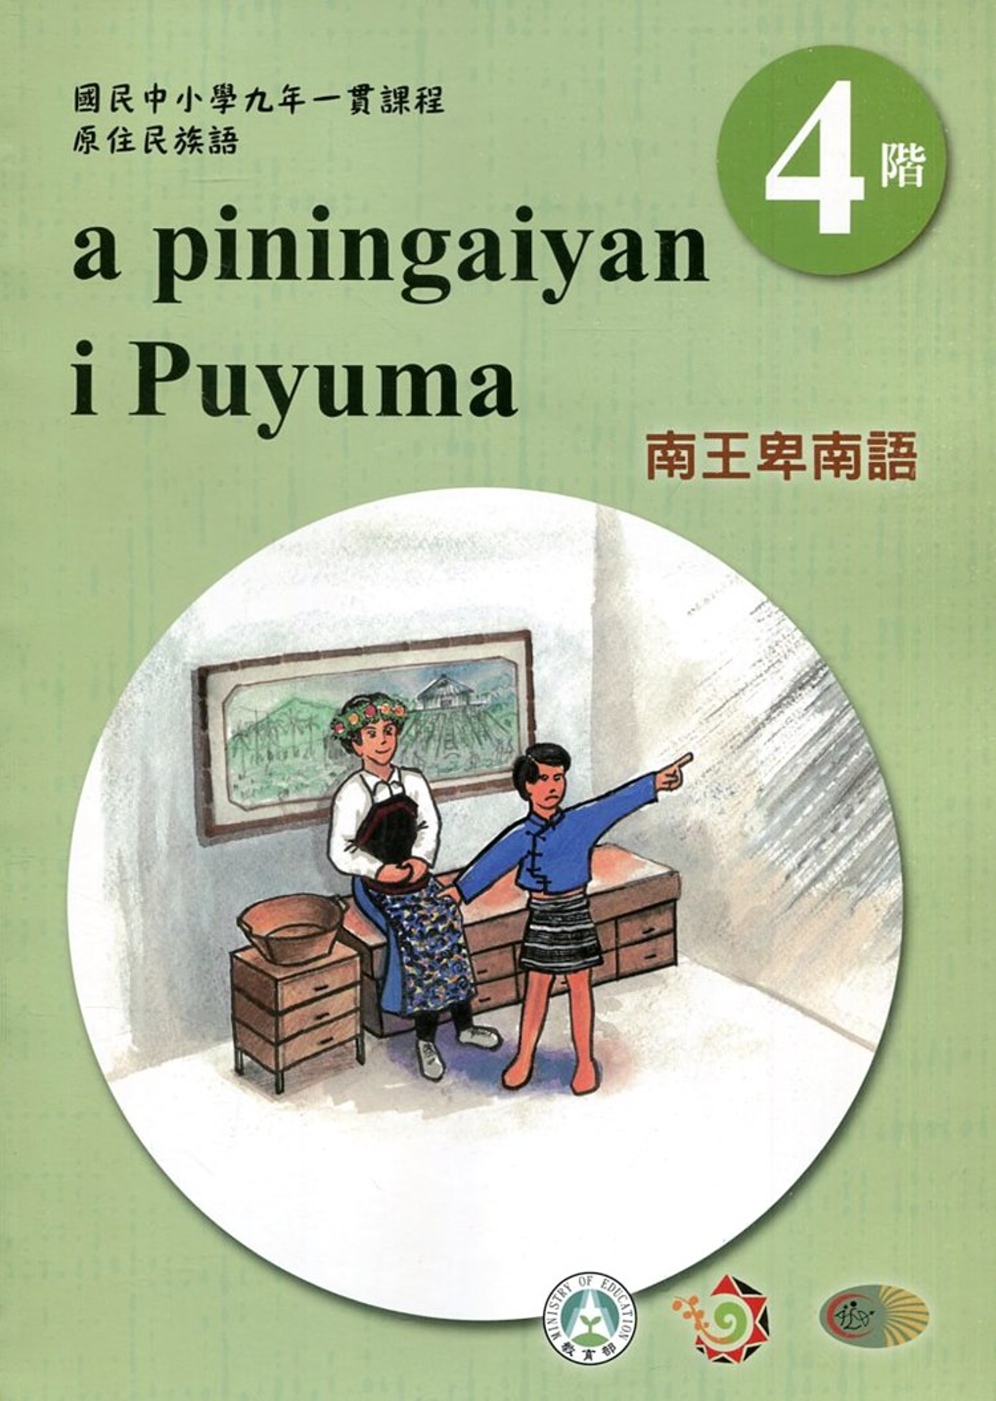 南王卑南語學習手冊第4階(附光碟)3版2刷